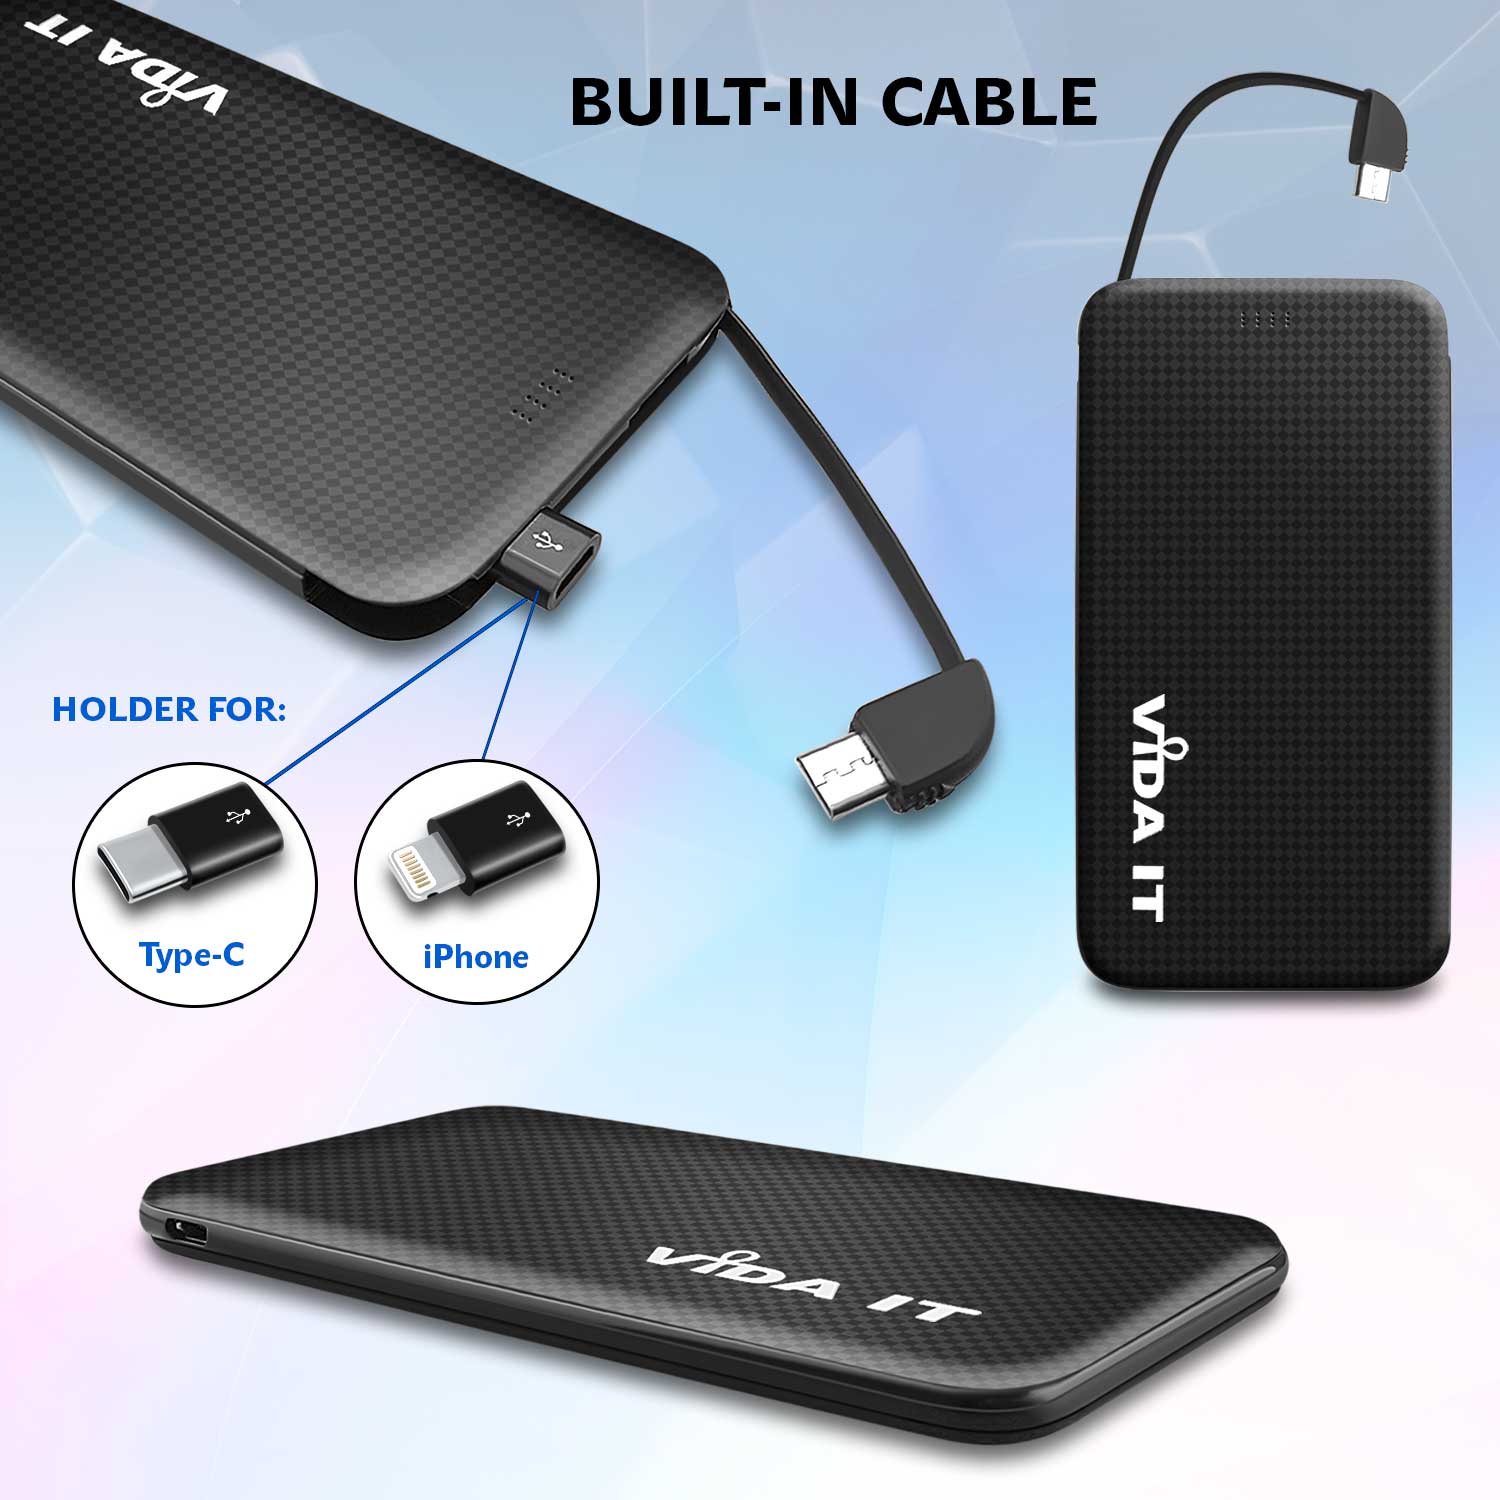 Tragbare Akku Extern PowerBank 5000mAh Ladegerät mit einem integrierten Micro-USB Kabel und iPhone  und USB Typ-C Adaptern für handy schwarz